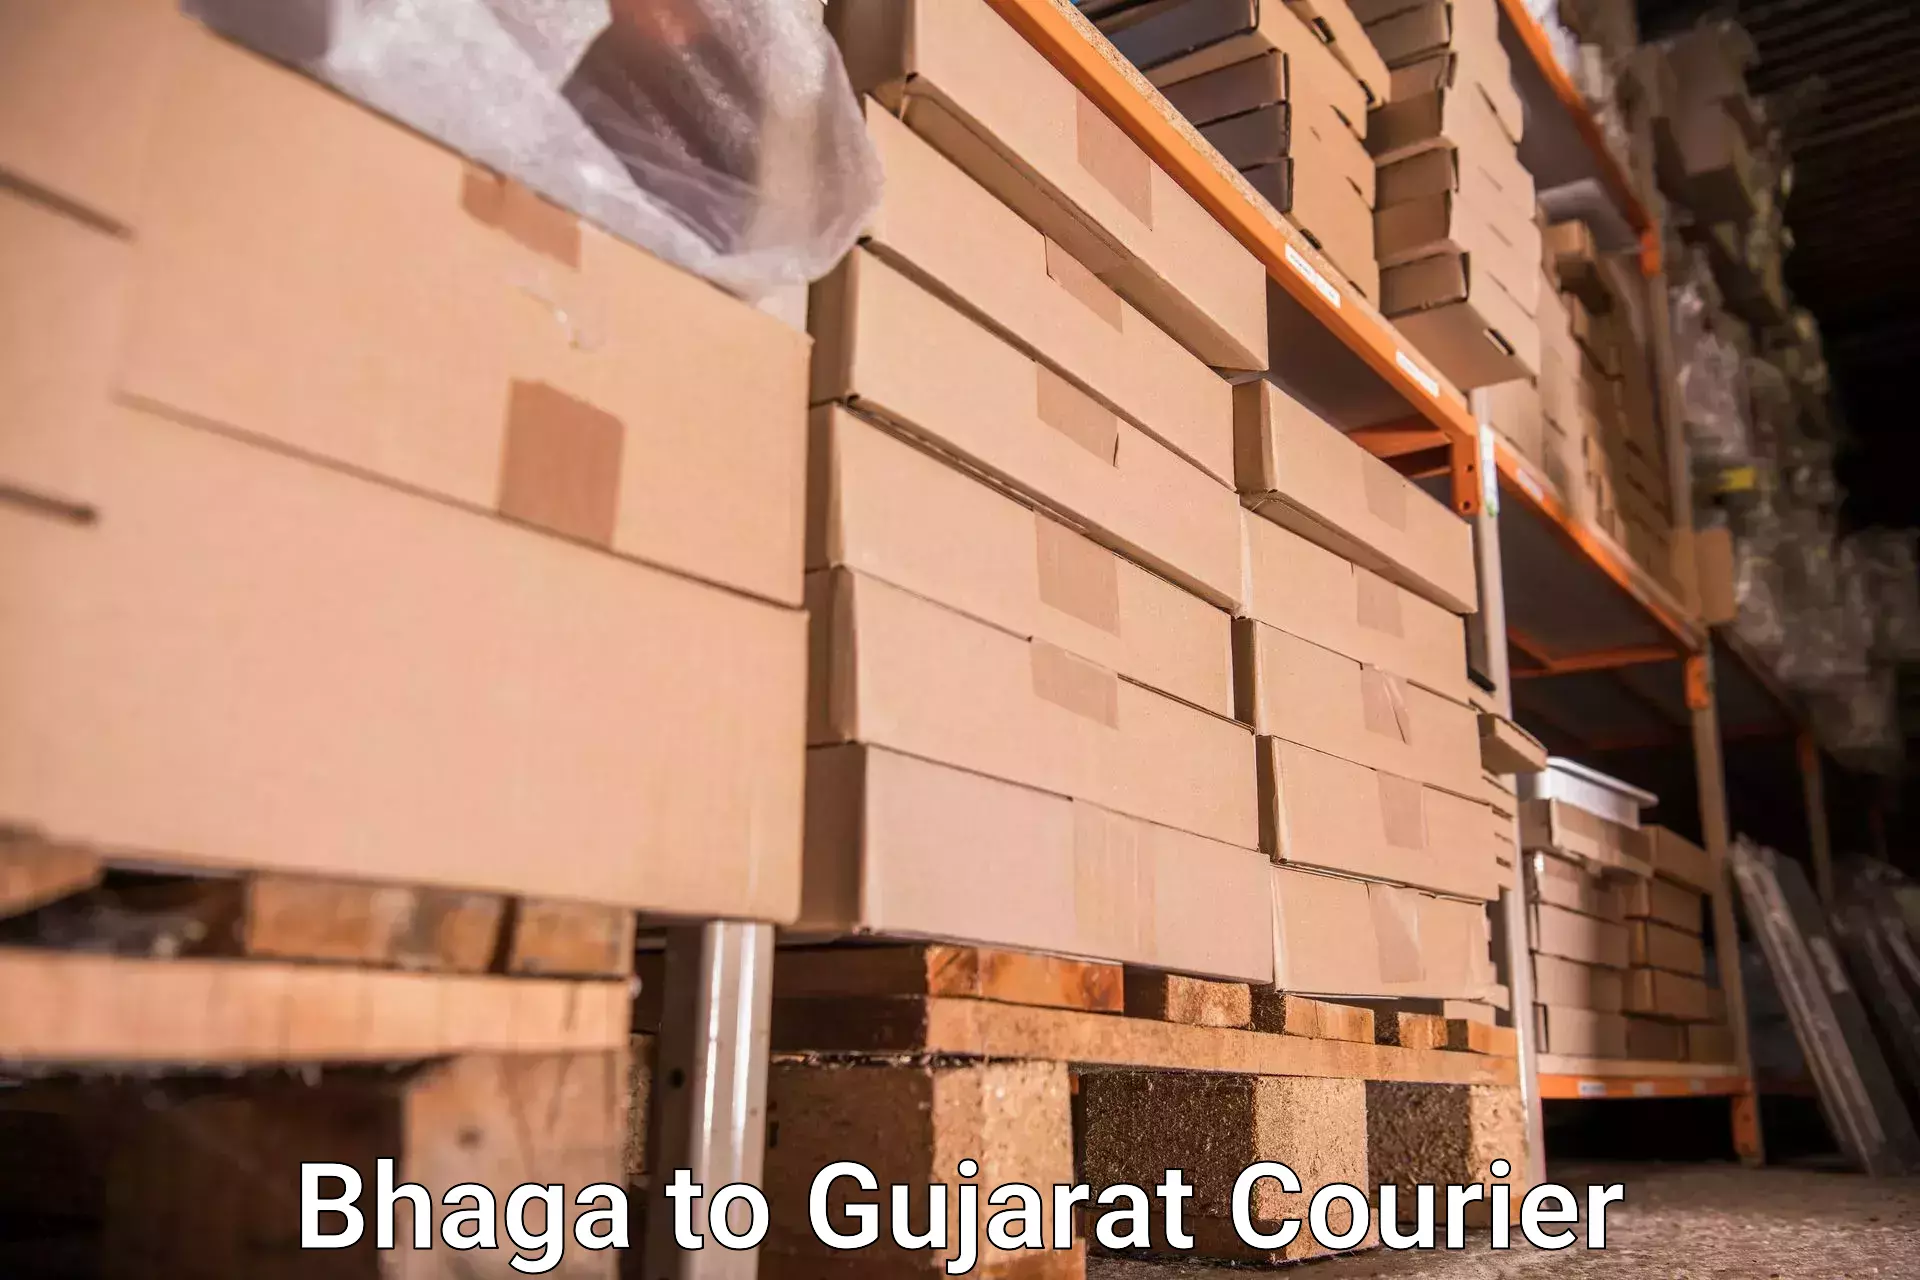 Baggage transport network Bhaga to Dahej